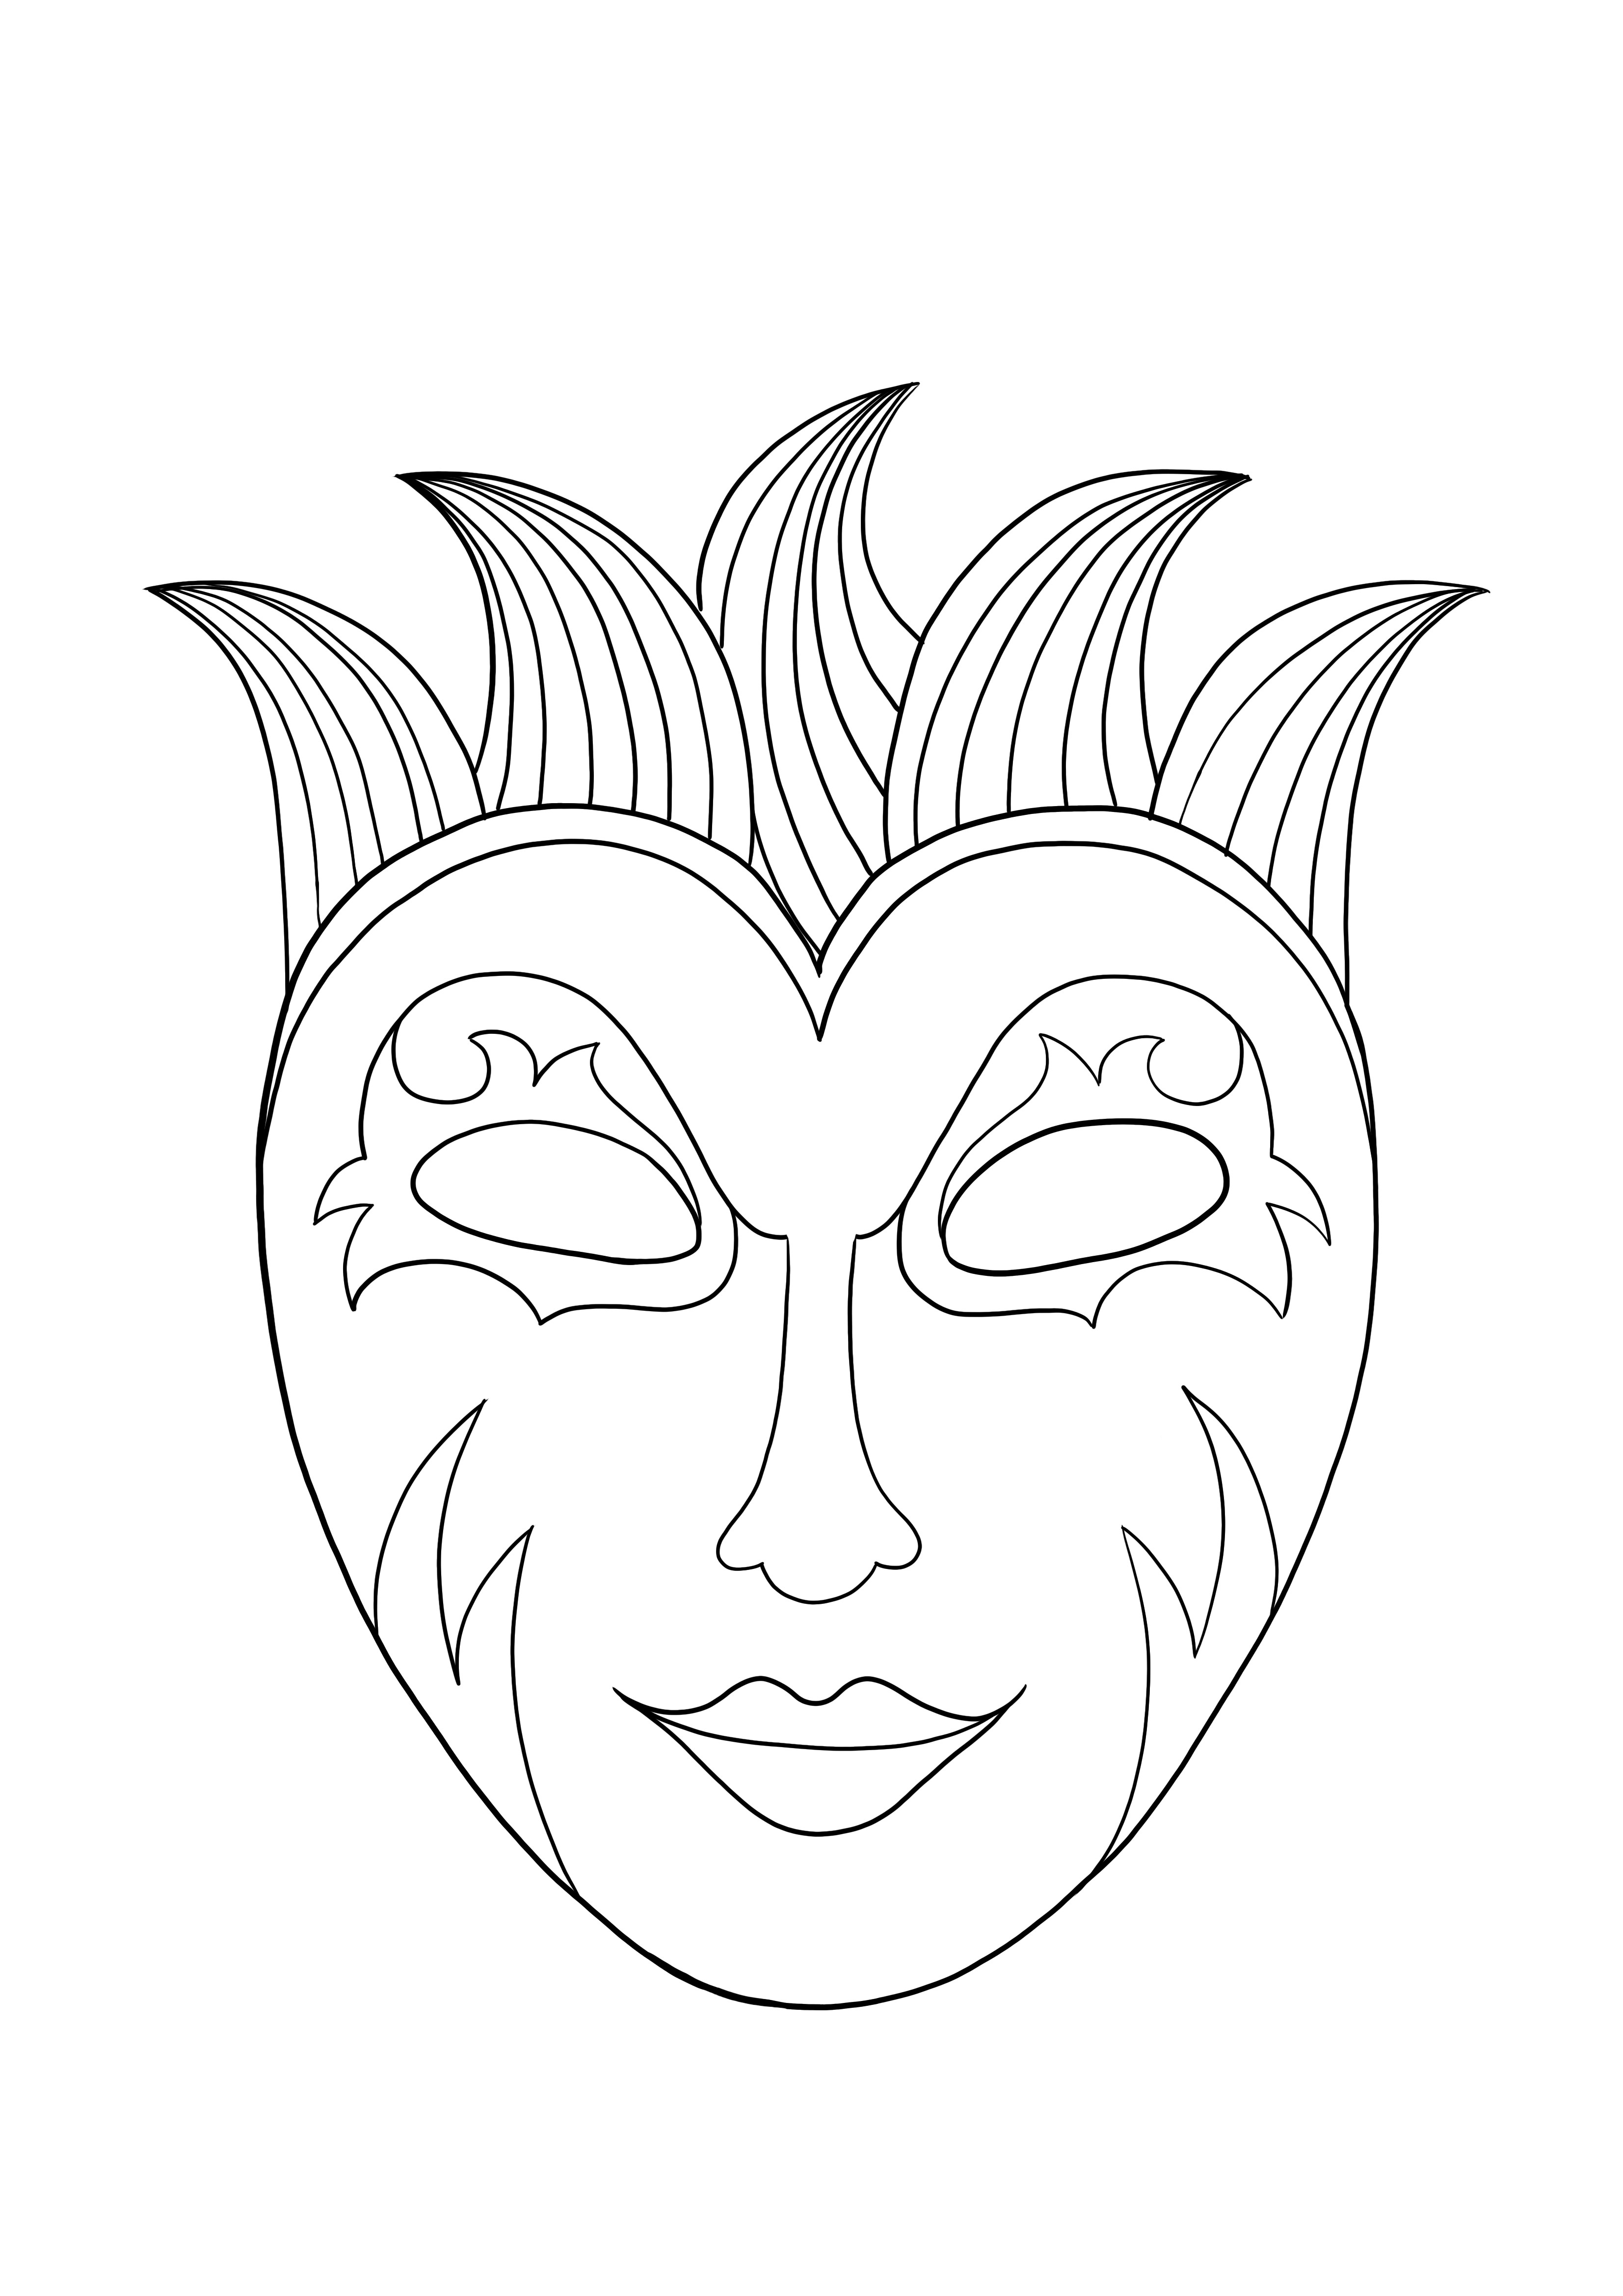 Mardi Gras maski ilmainen lataus ja väritysarkki